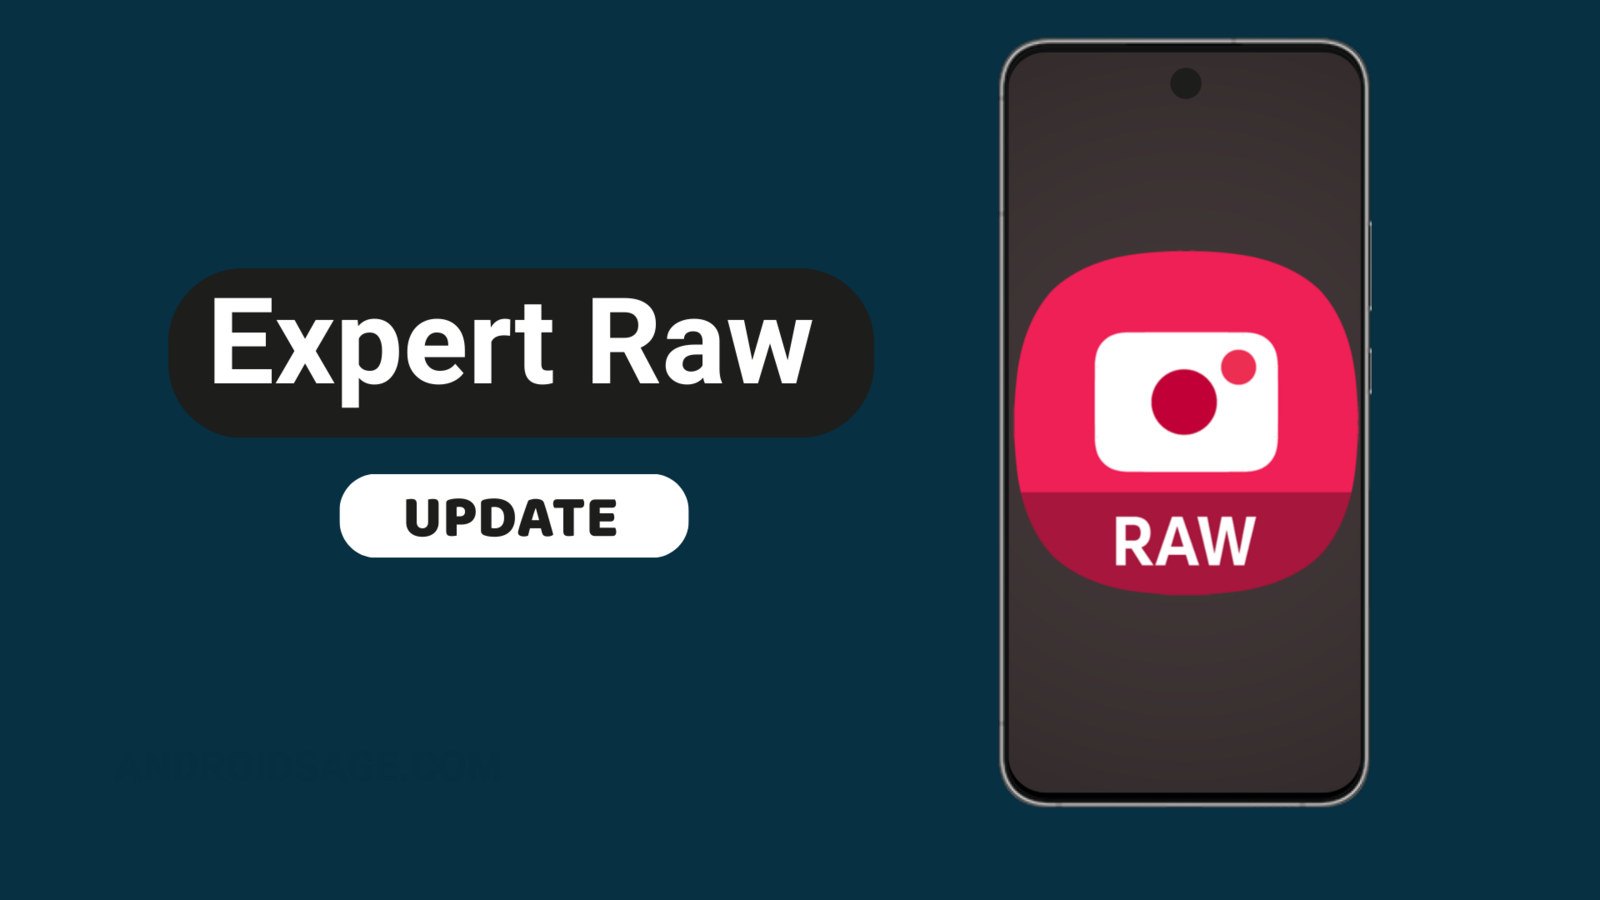 Samsung Expert RAW camera app gets even better